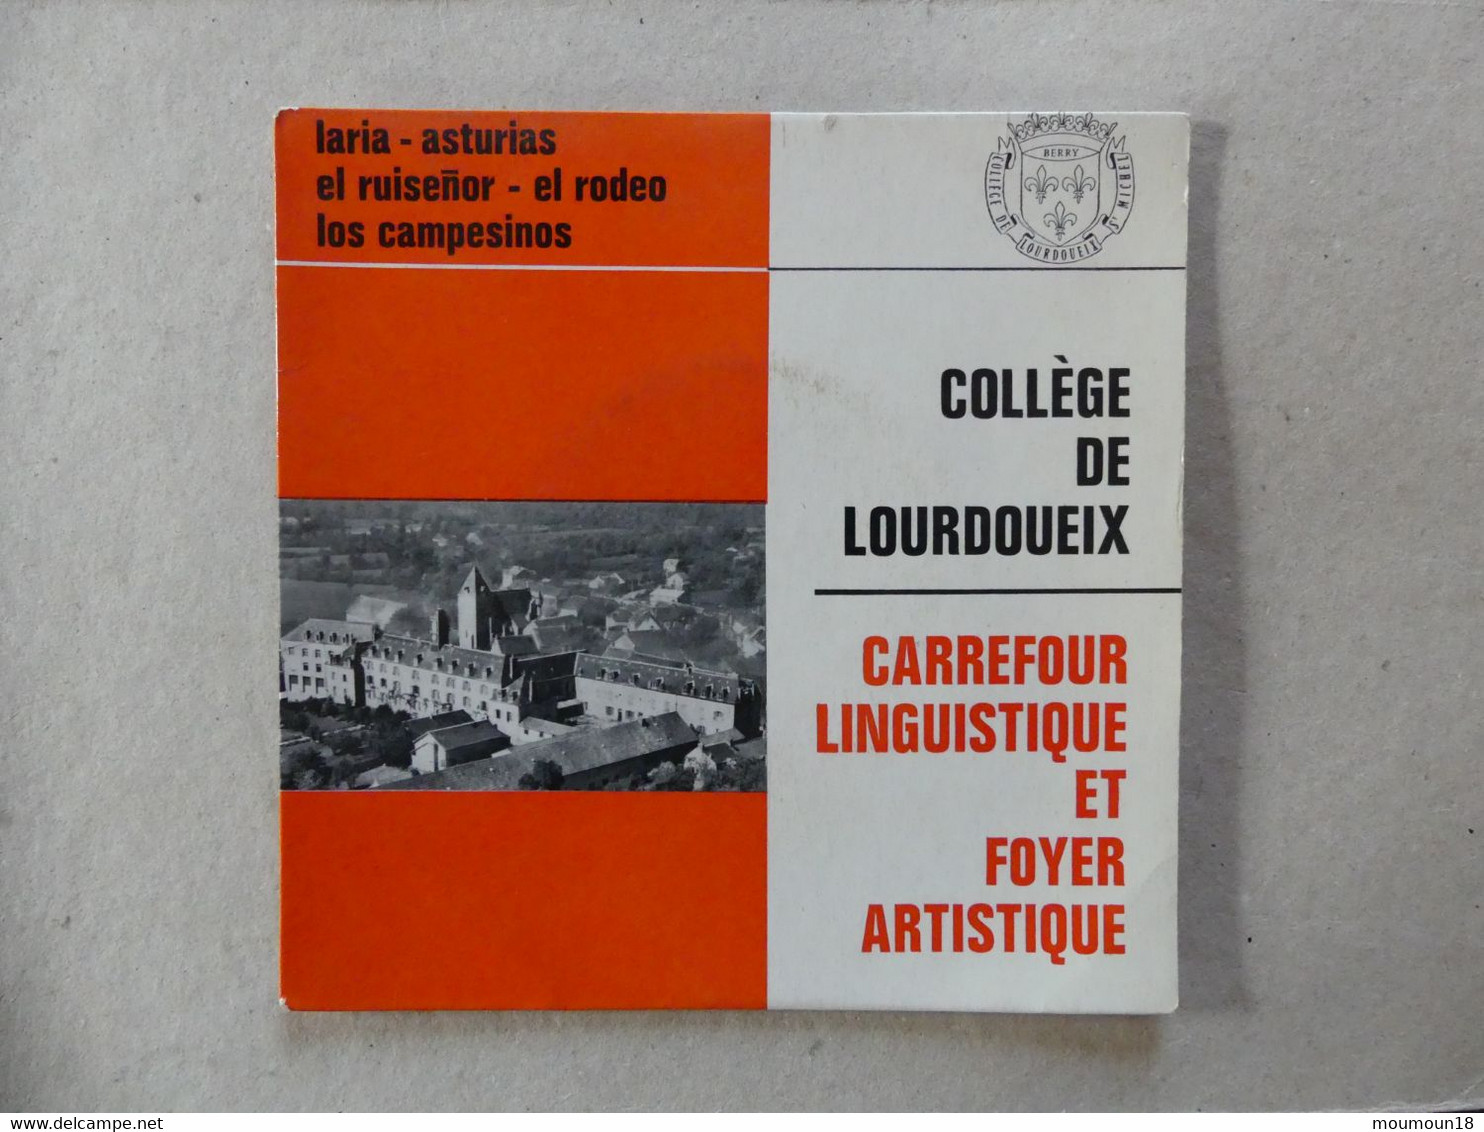 45 T College De Lourdoueix Carrefour Linguistique Et Foyer Artistique Matilla Ramos - Other - Spanish Music